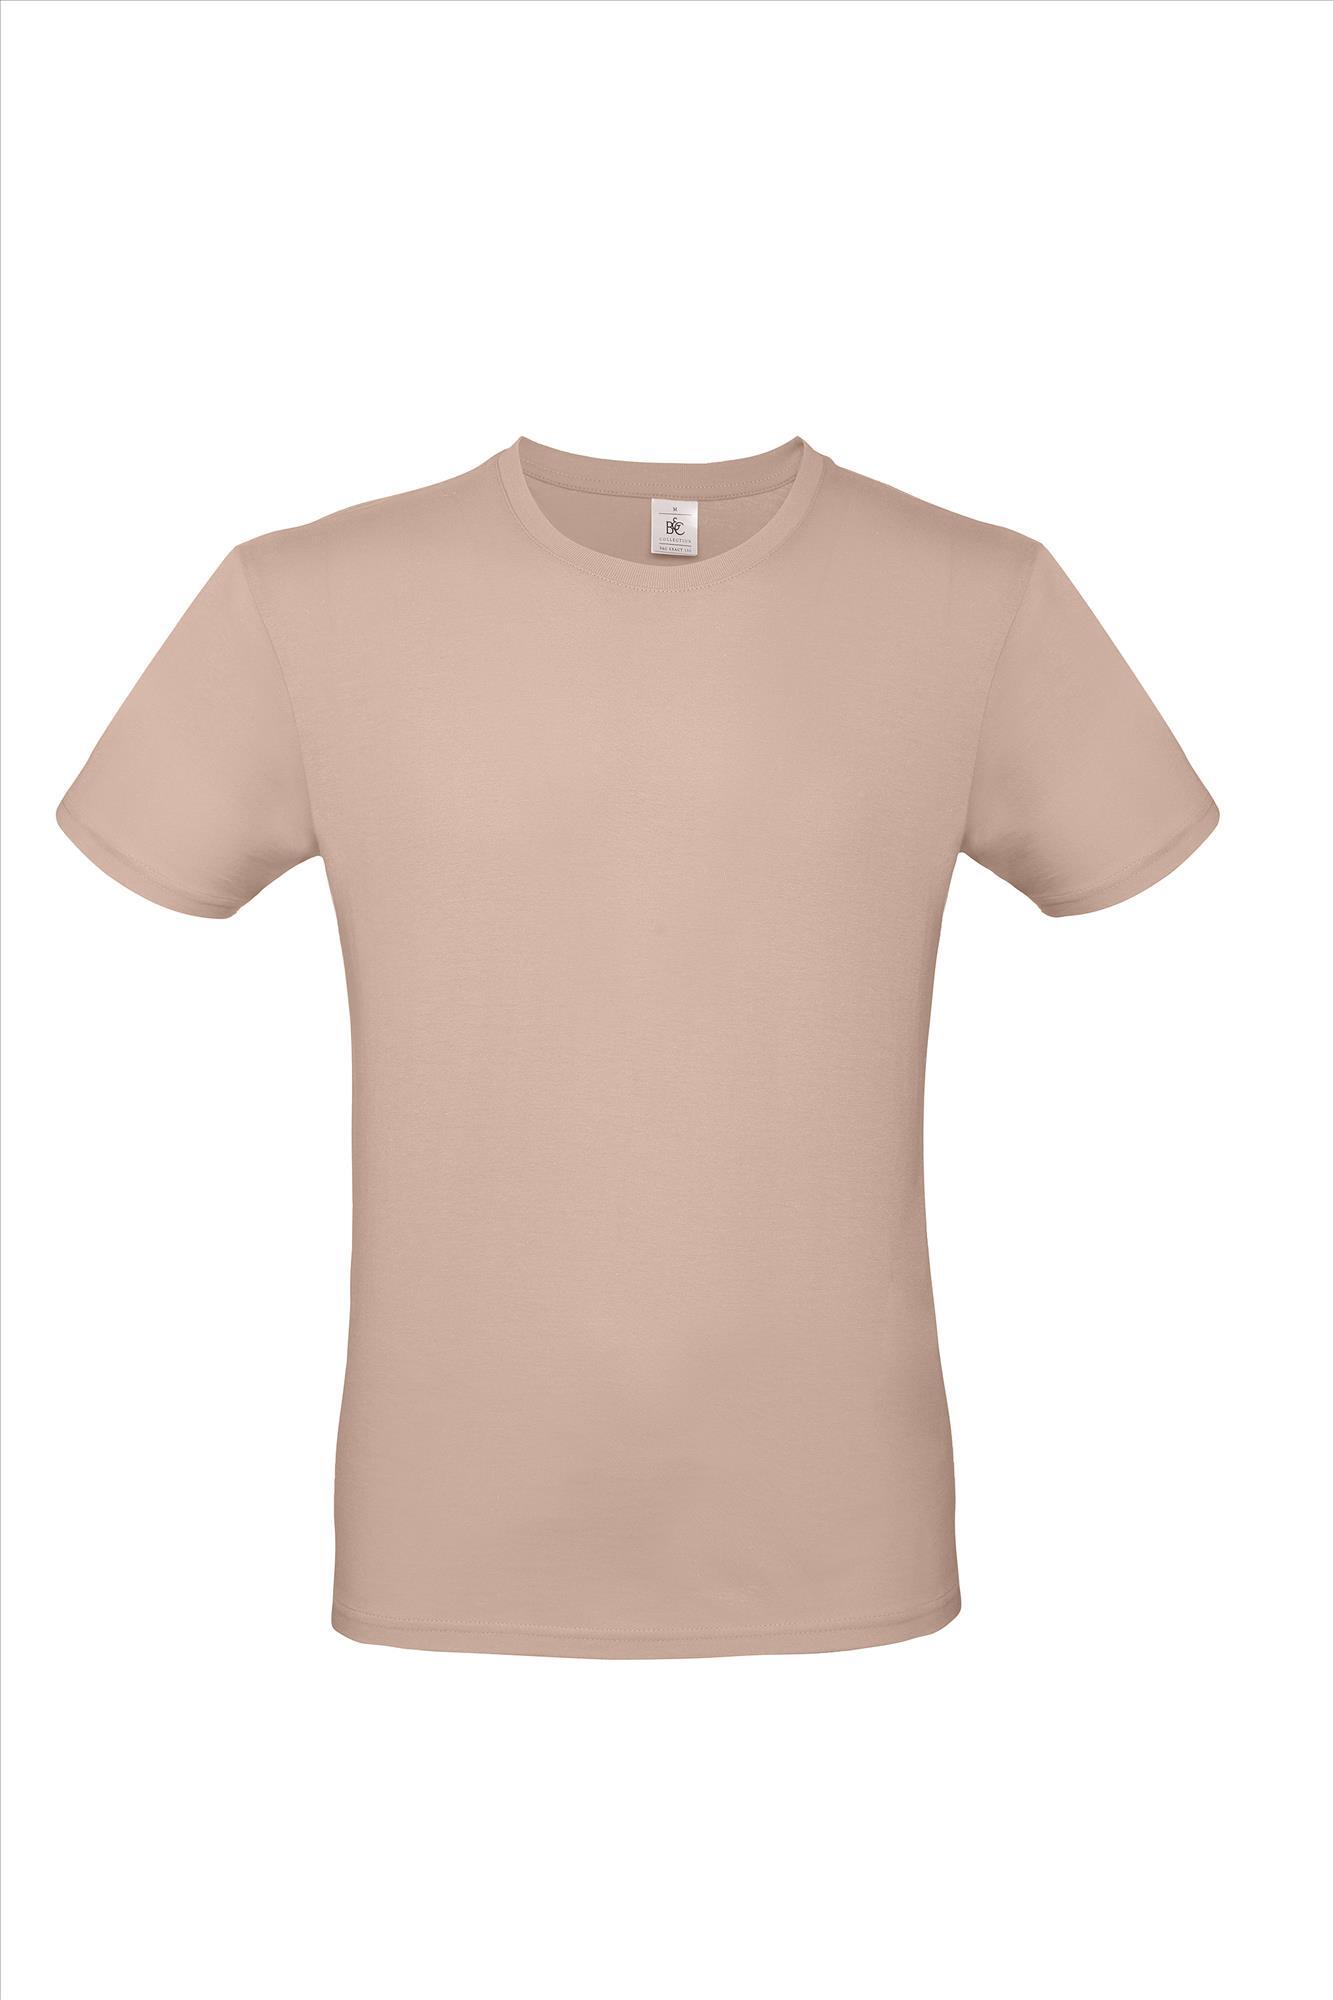 Modern T-shirt voor hem fraai heren shirt millennial pink